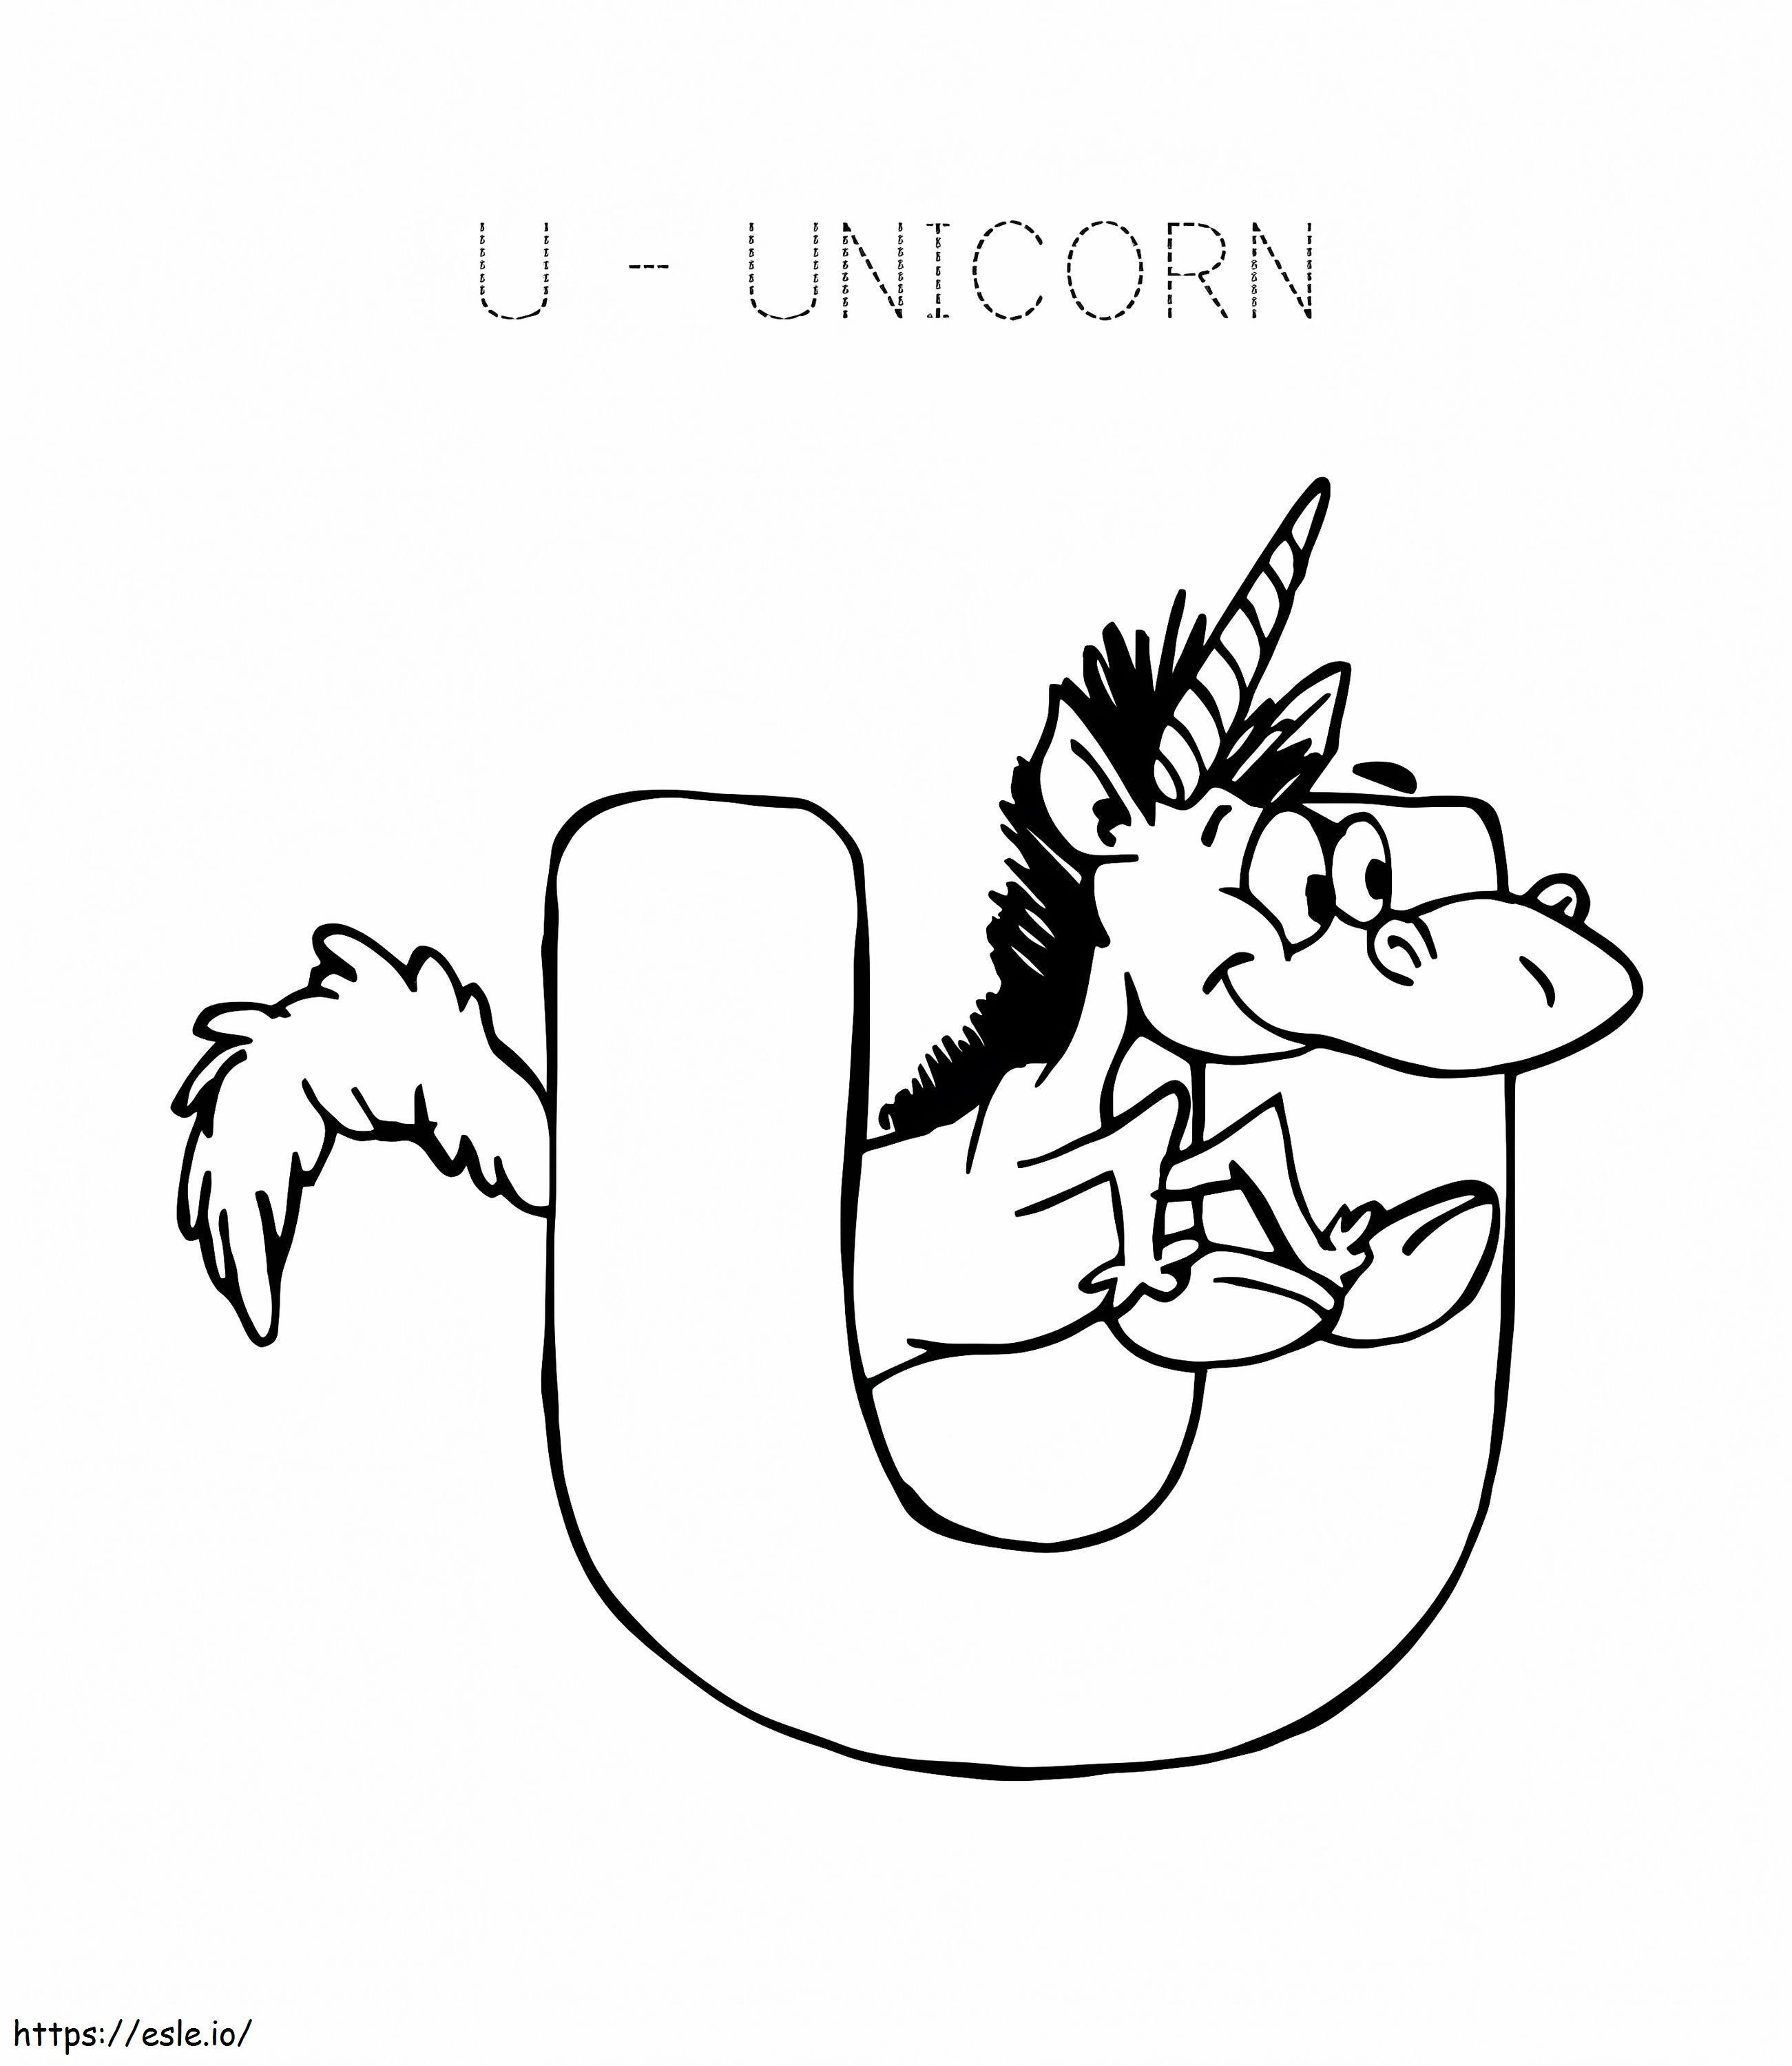 Letra Unicornio U 1 para colorear